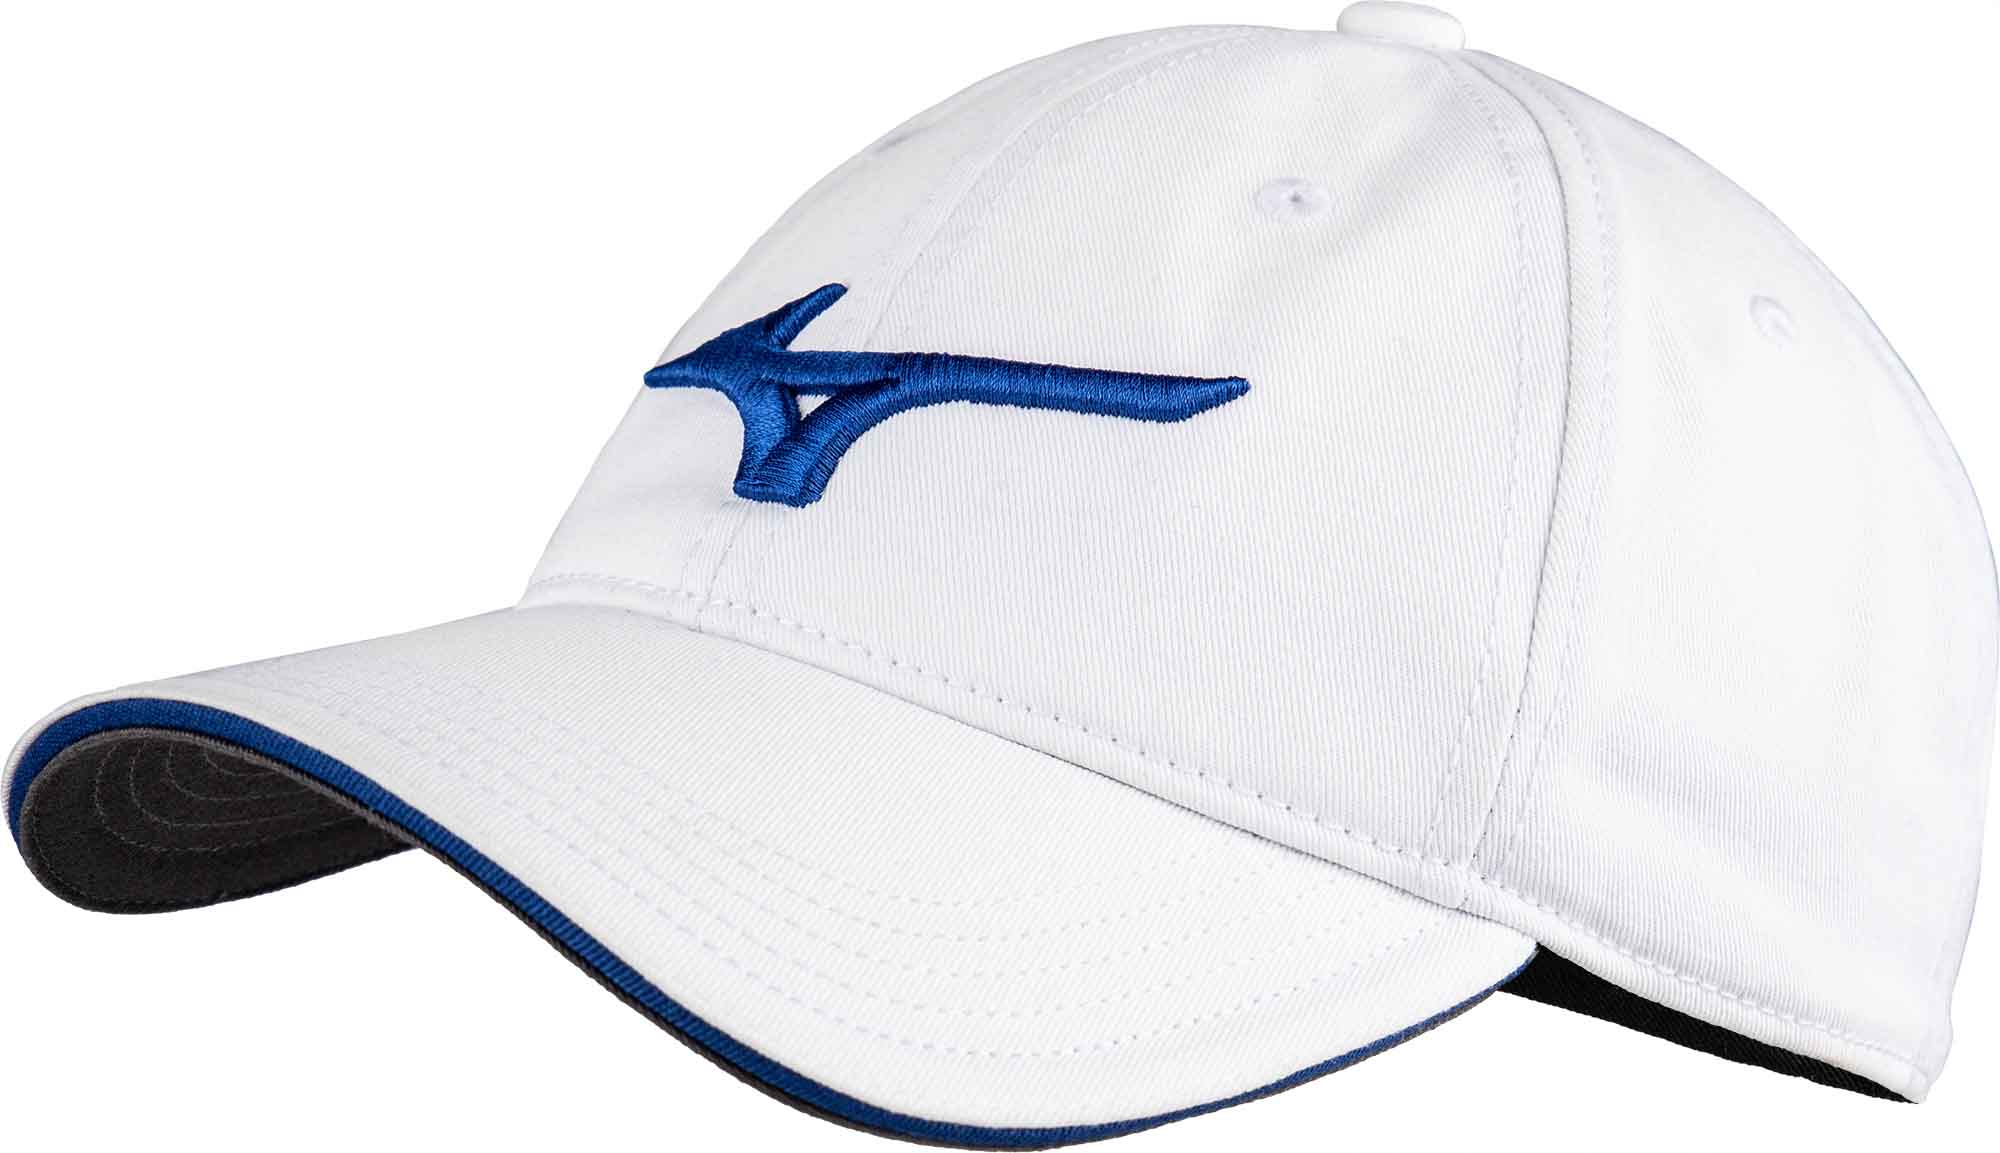 Multi-sport hat